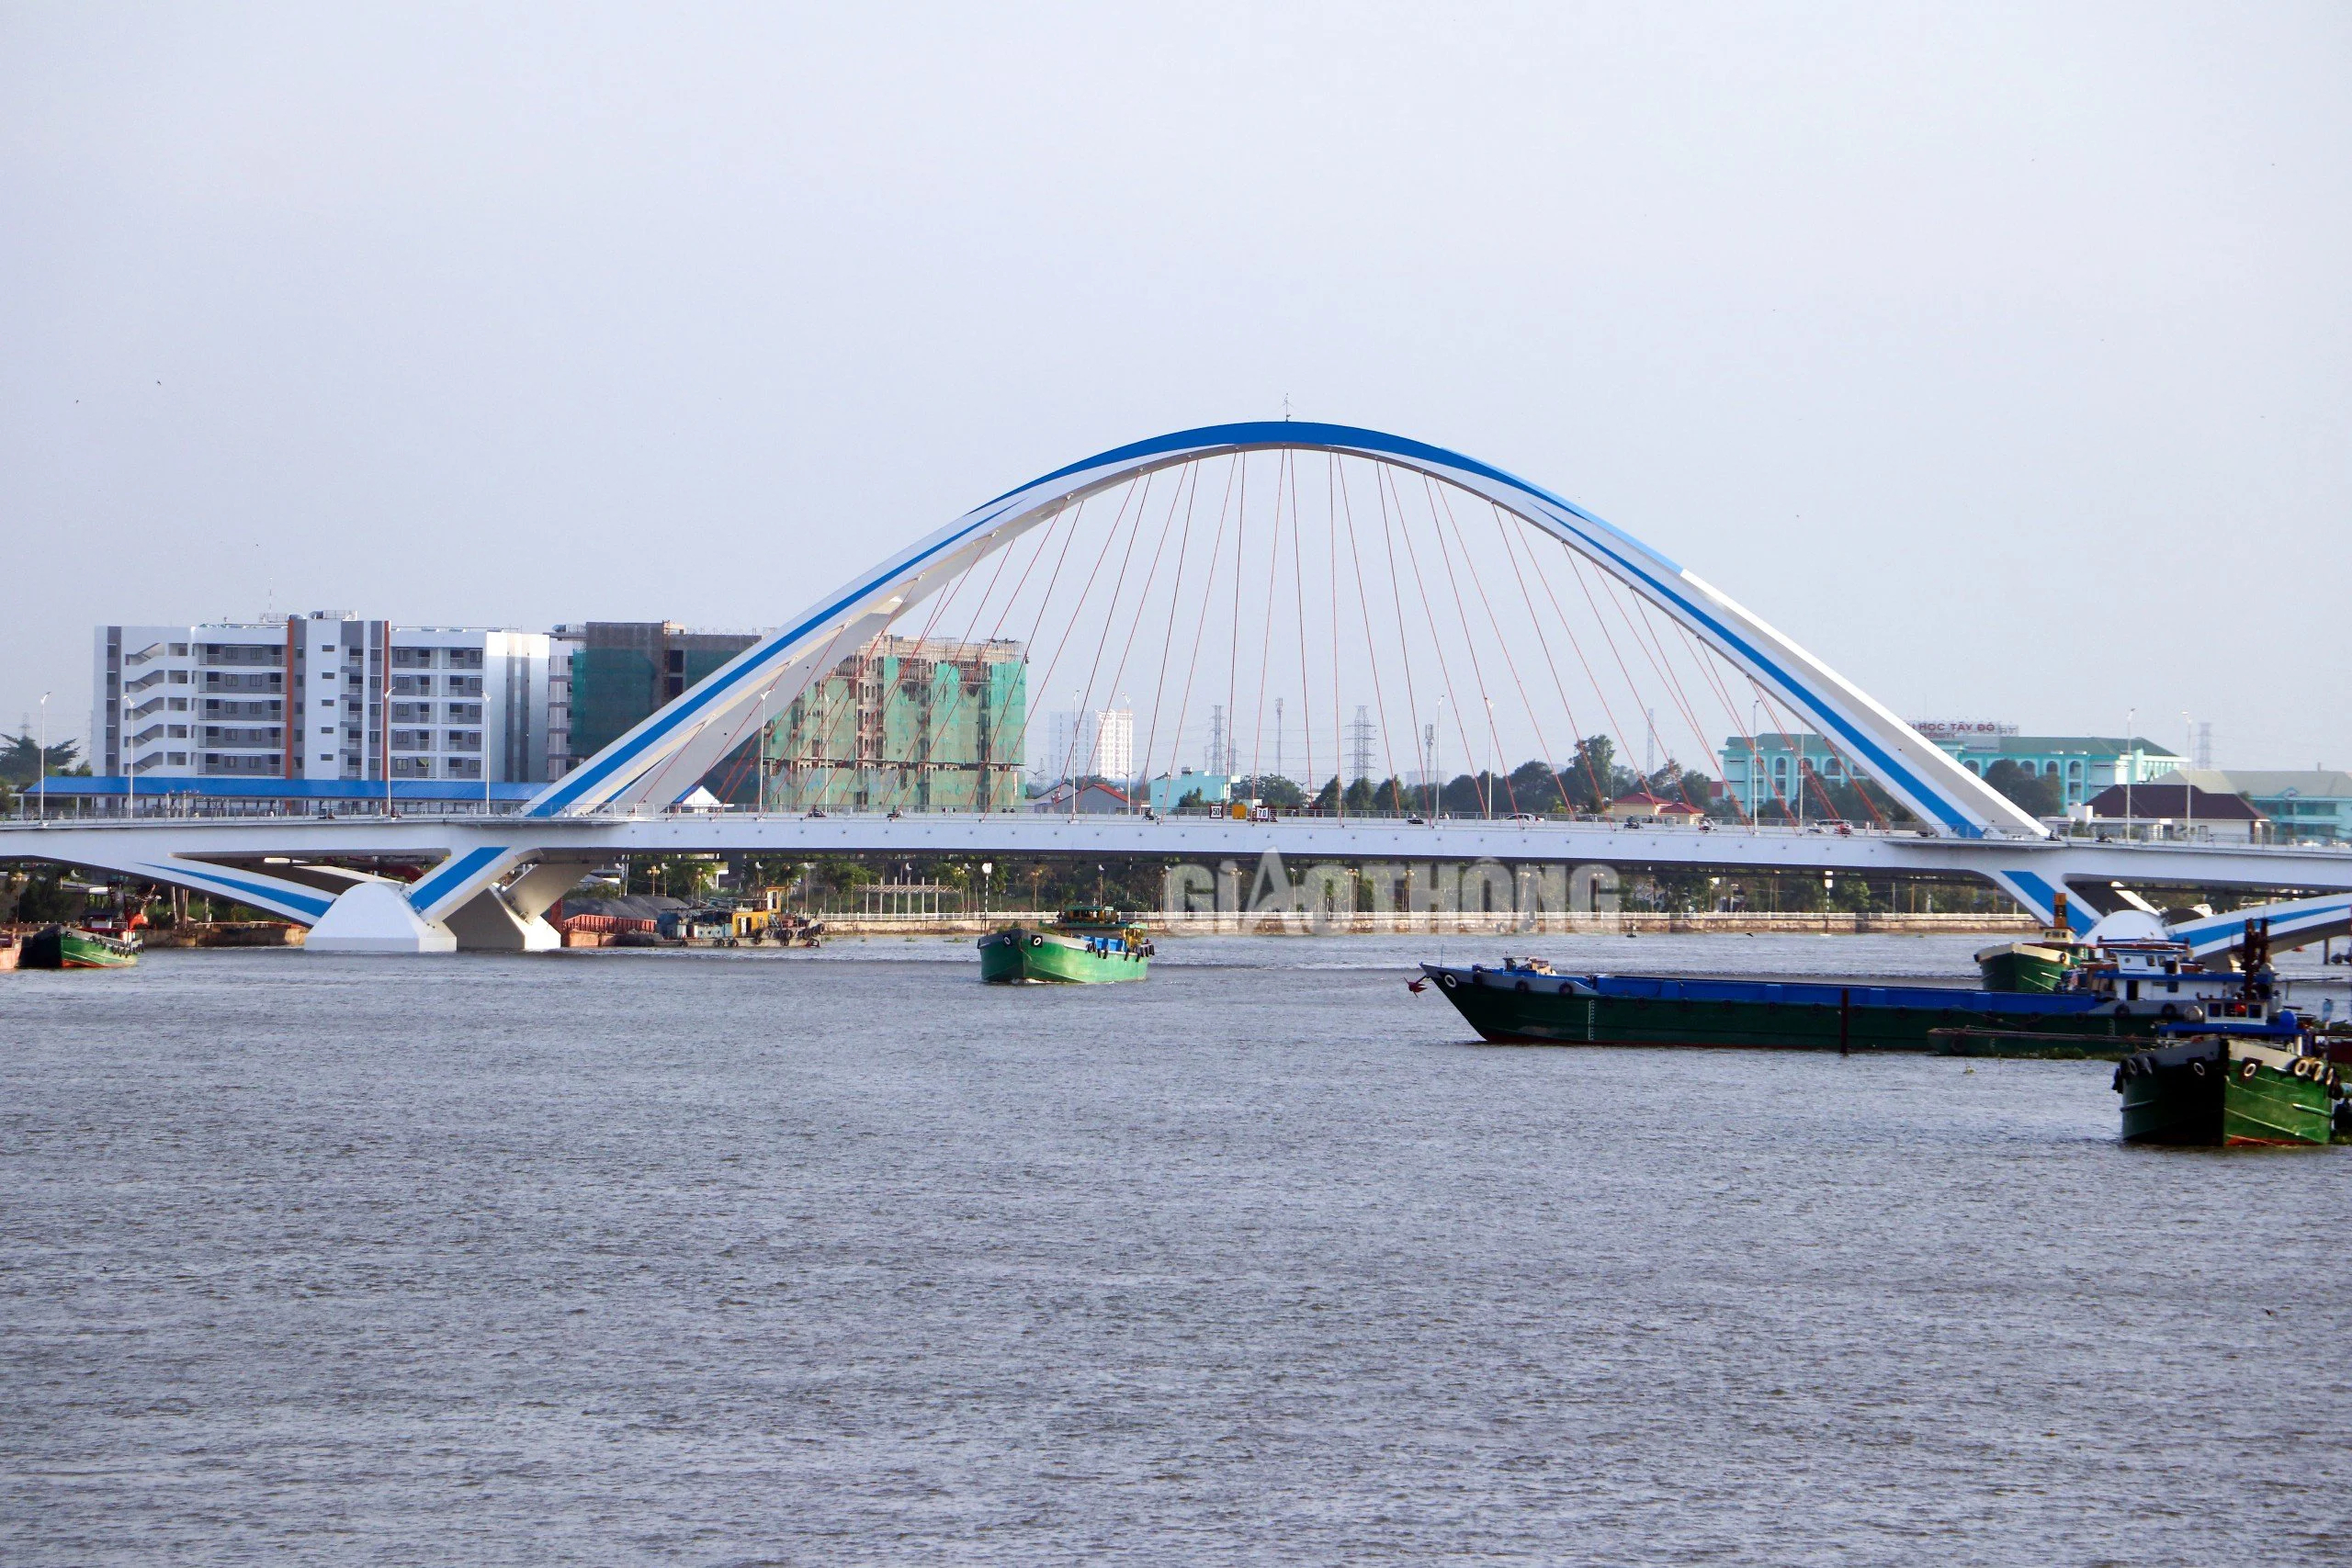 Ngắm những cây cầu hiện đại, thay đổi diện mạo thành phố Cần Thơ- Ảnh 6.